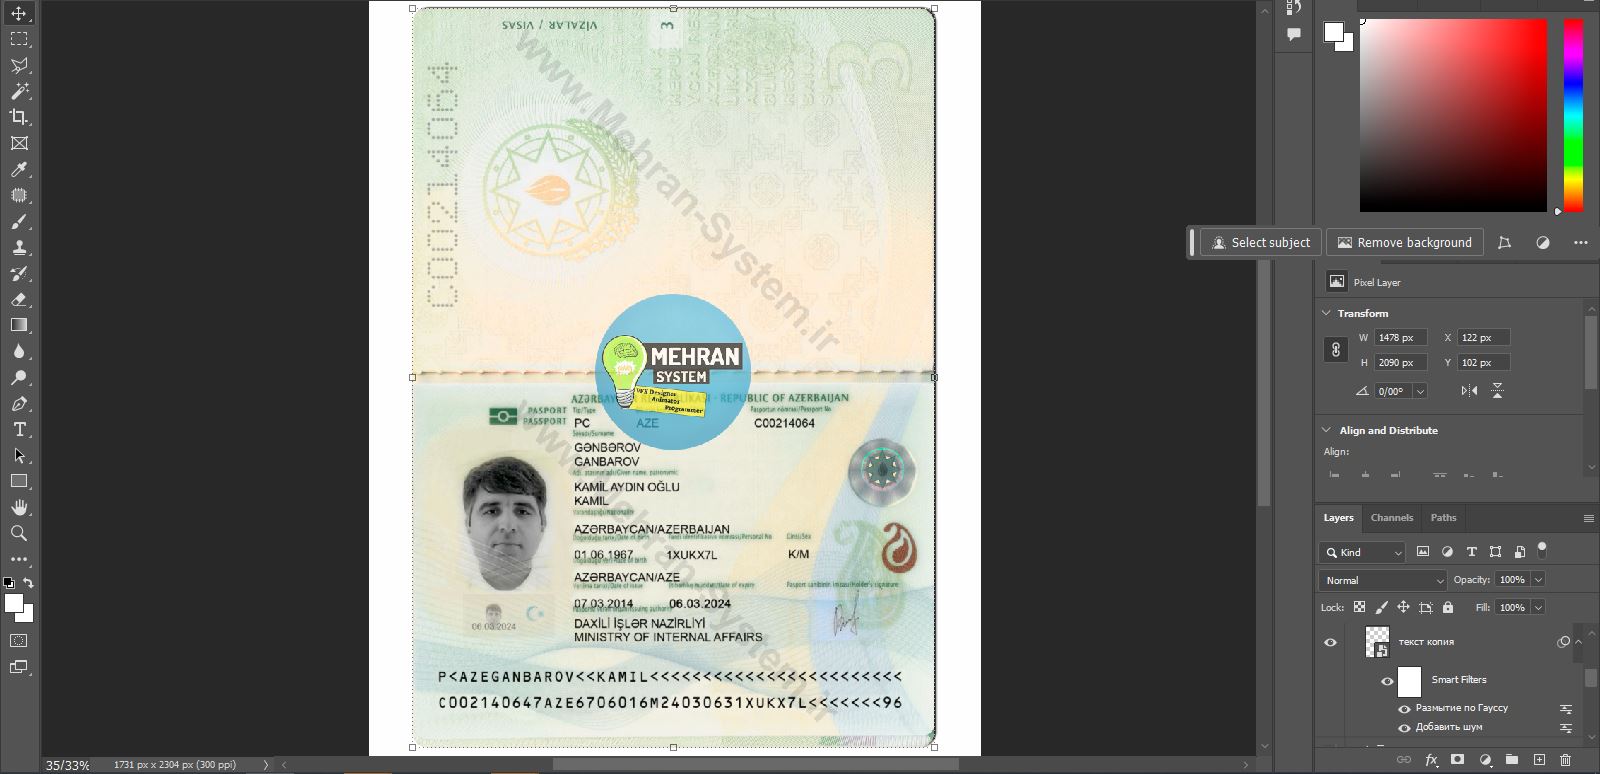 پاسپورت آذربایجان